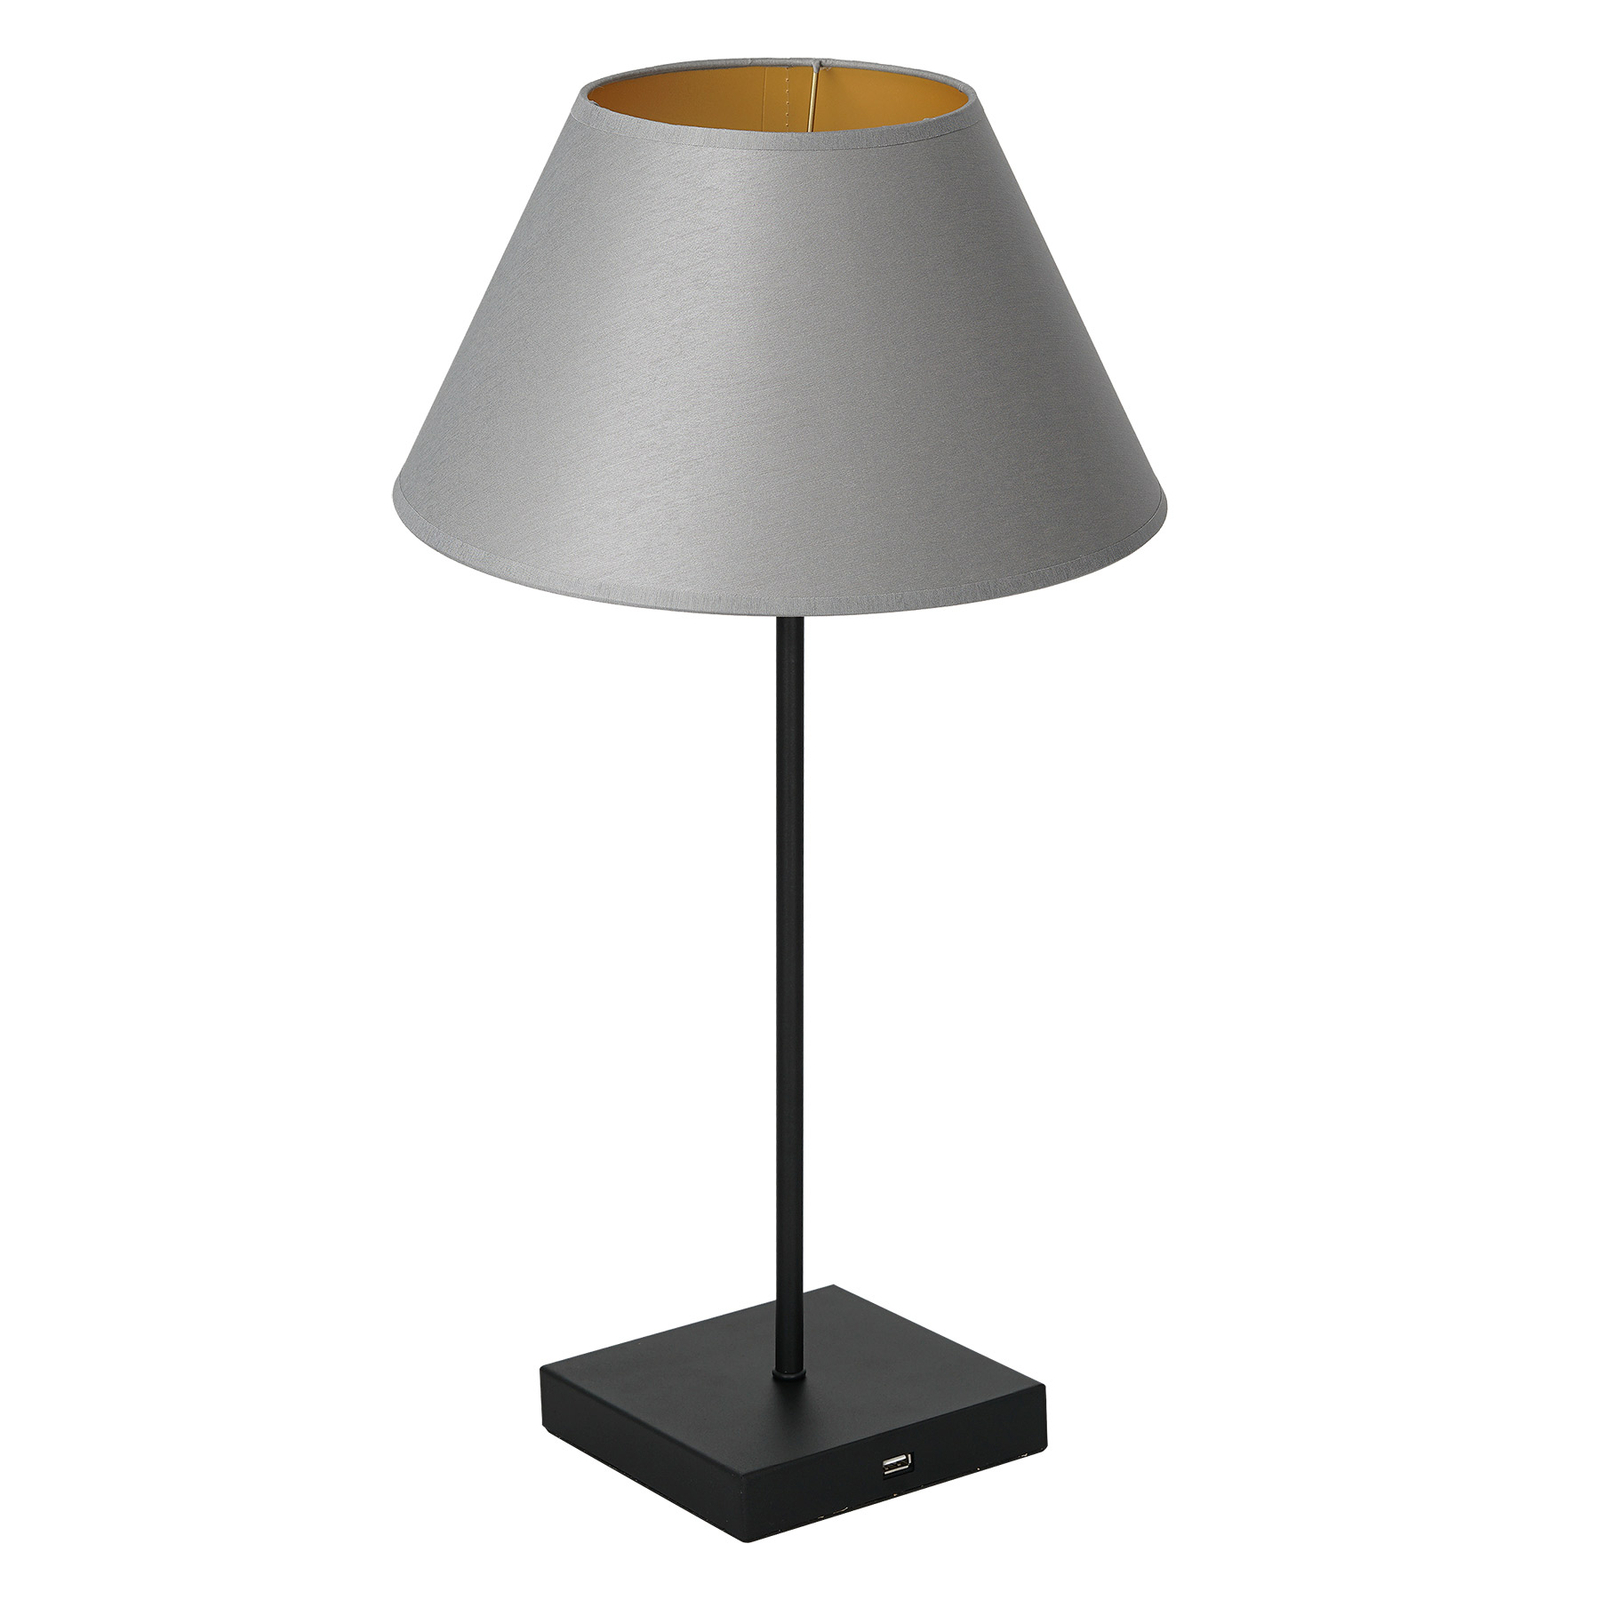 Tischlampe Table schwarz, Schirm konisch grau-gold